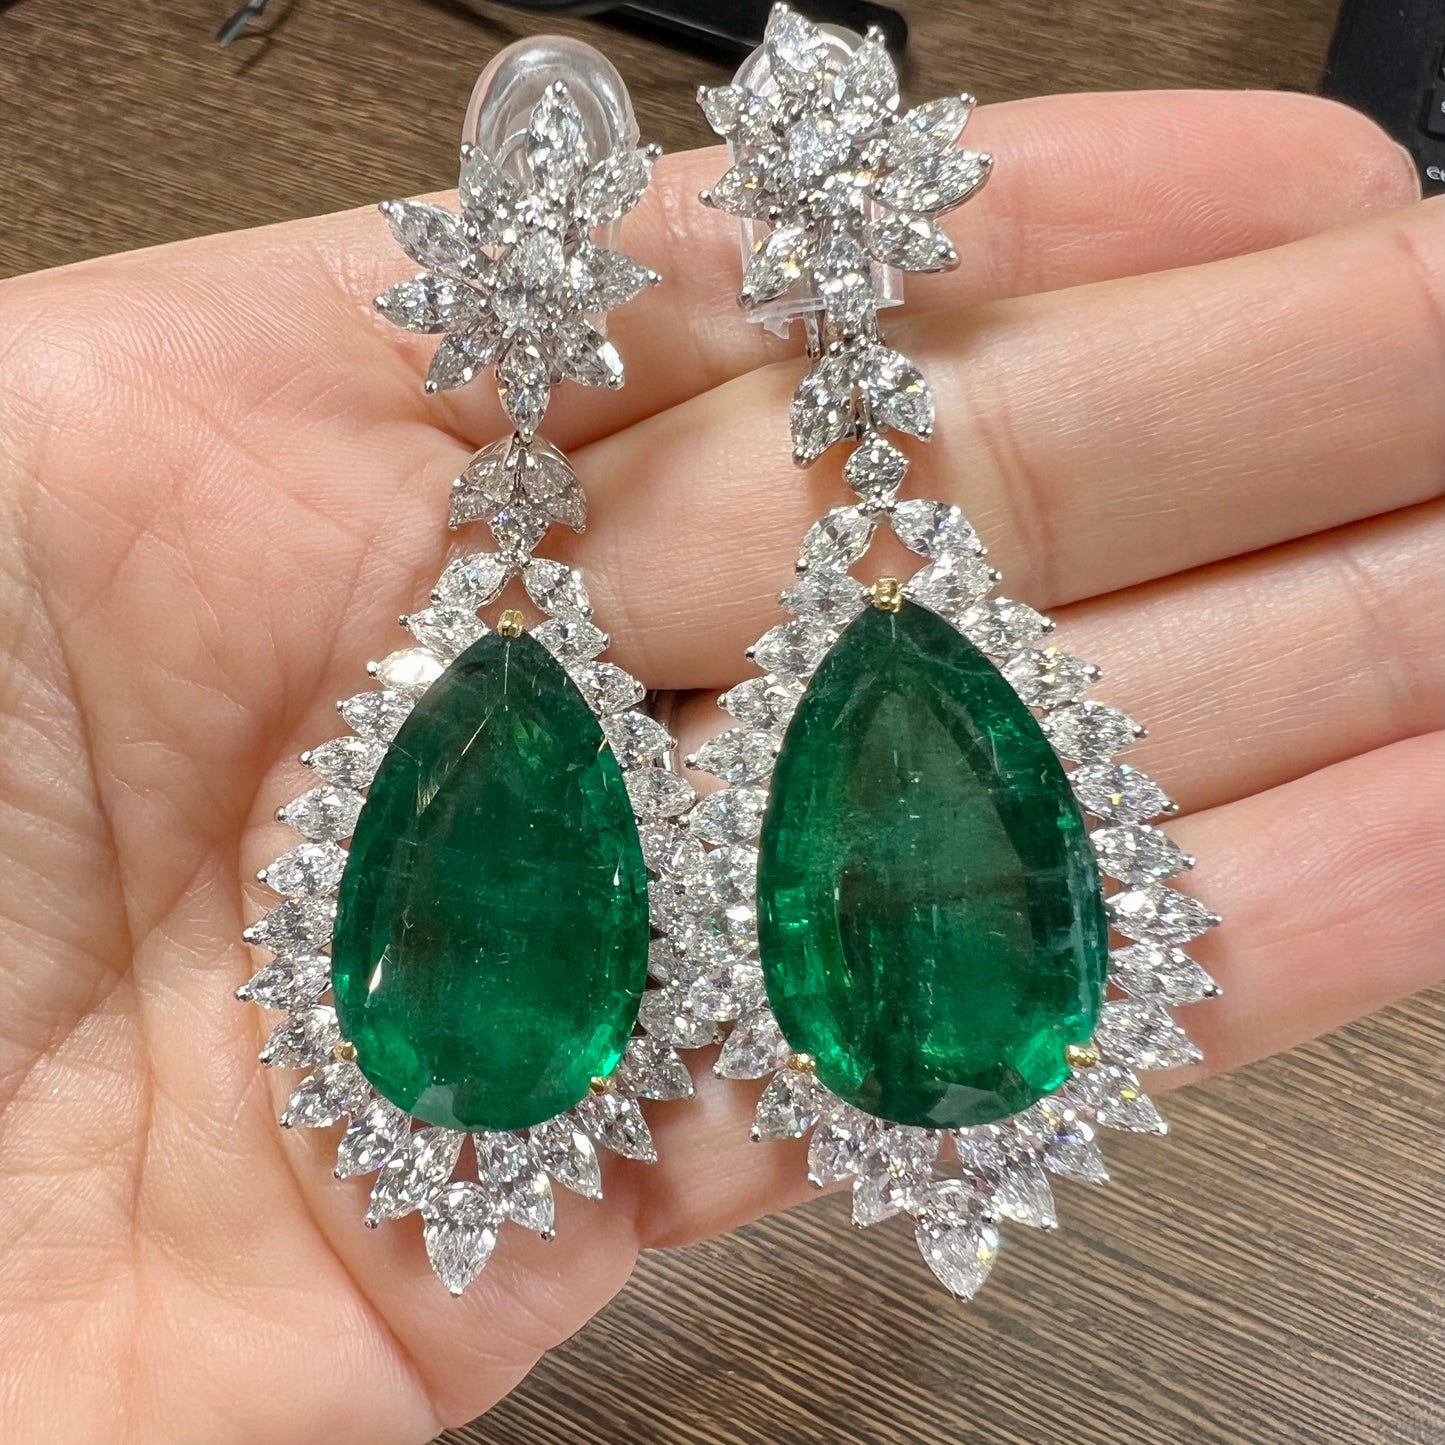 Post-1980s Platinum & 18KT White Gold Emerald & Diamond Earrings in hand